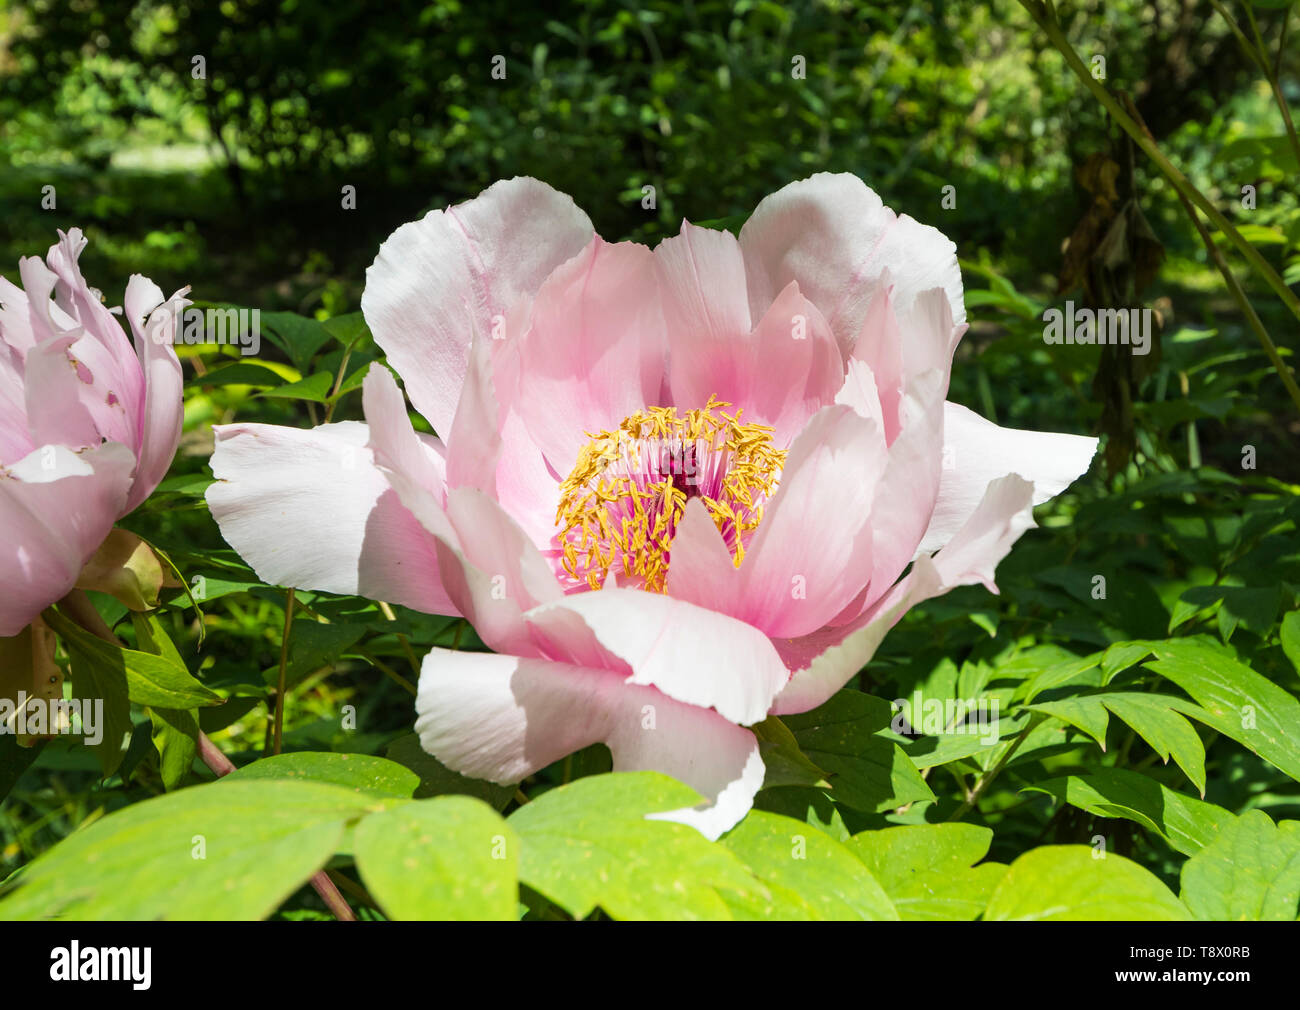 De peonía blanca y rosa, una gran flor del género Paeonia, creciendo en la primavera (Mayo) en West Sussex, Inglaterra, Reino Unido. Foto de stock